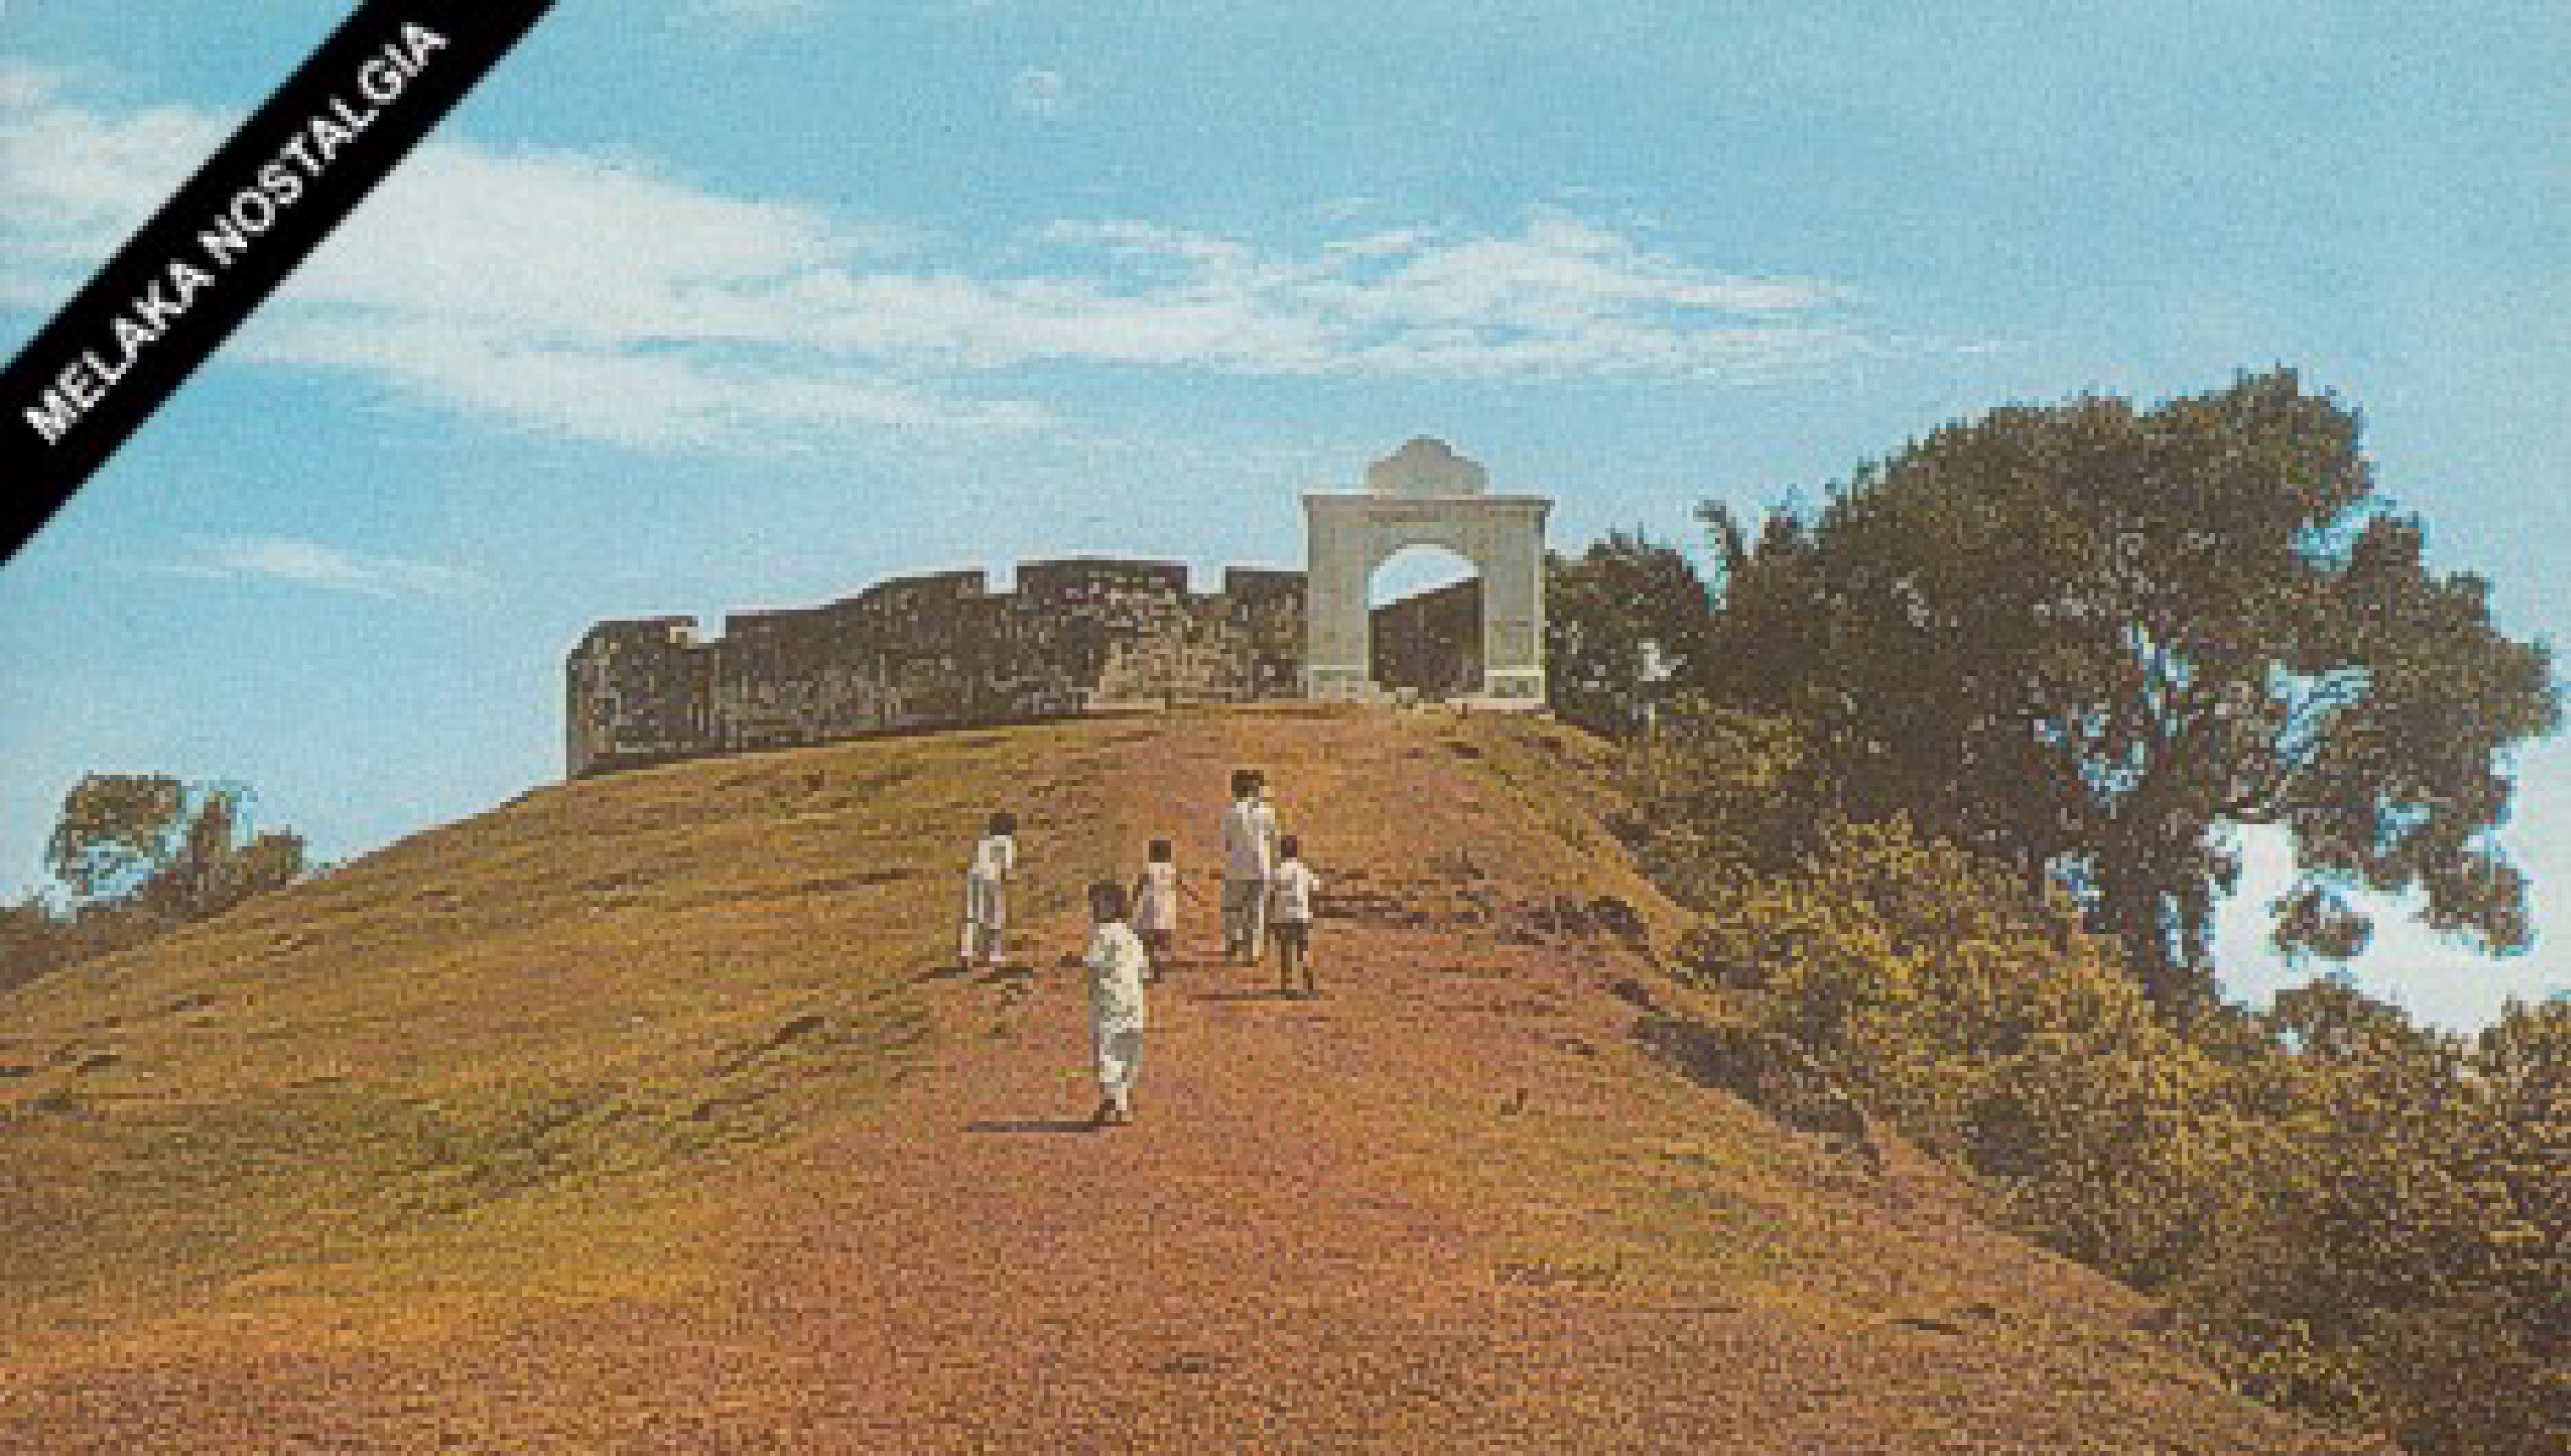 St. John's Fort circa 1960 (source: Melaka Nostalgia)